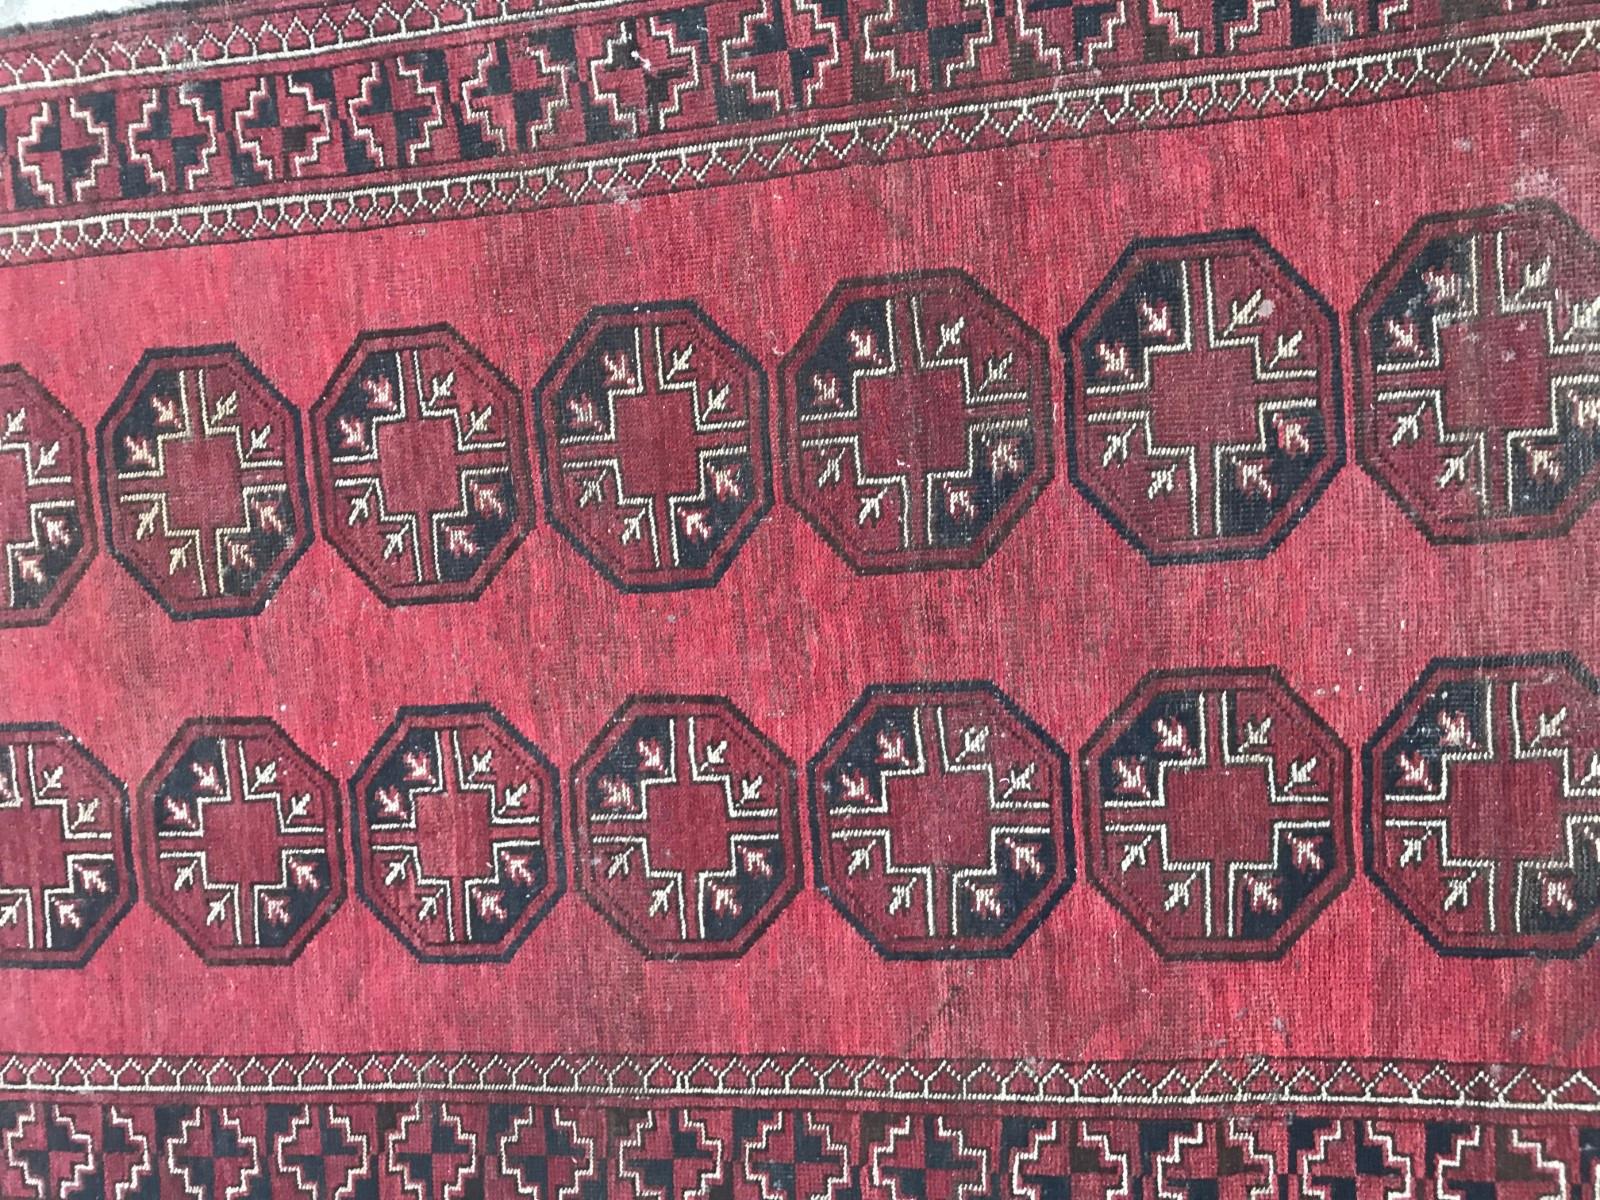 Tapis afghan du début du 20e siècle avec un motif turkmène et des couleurs rouge et noir, entièrement noué à la main avec du velours de laine sur des fondations en laine.